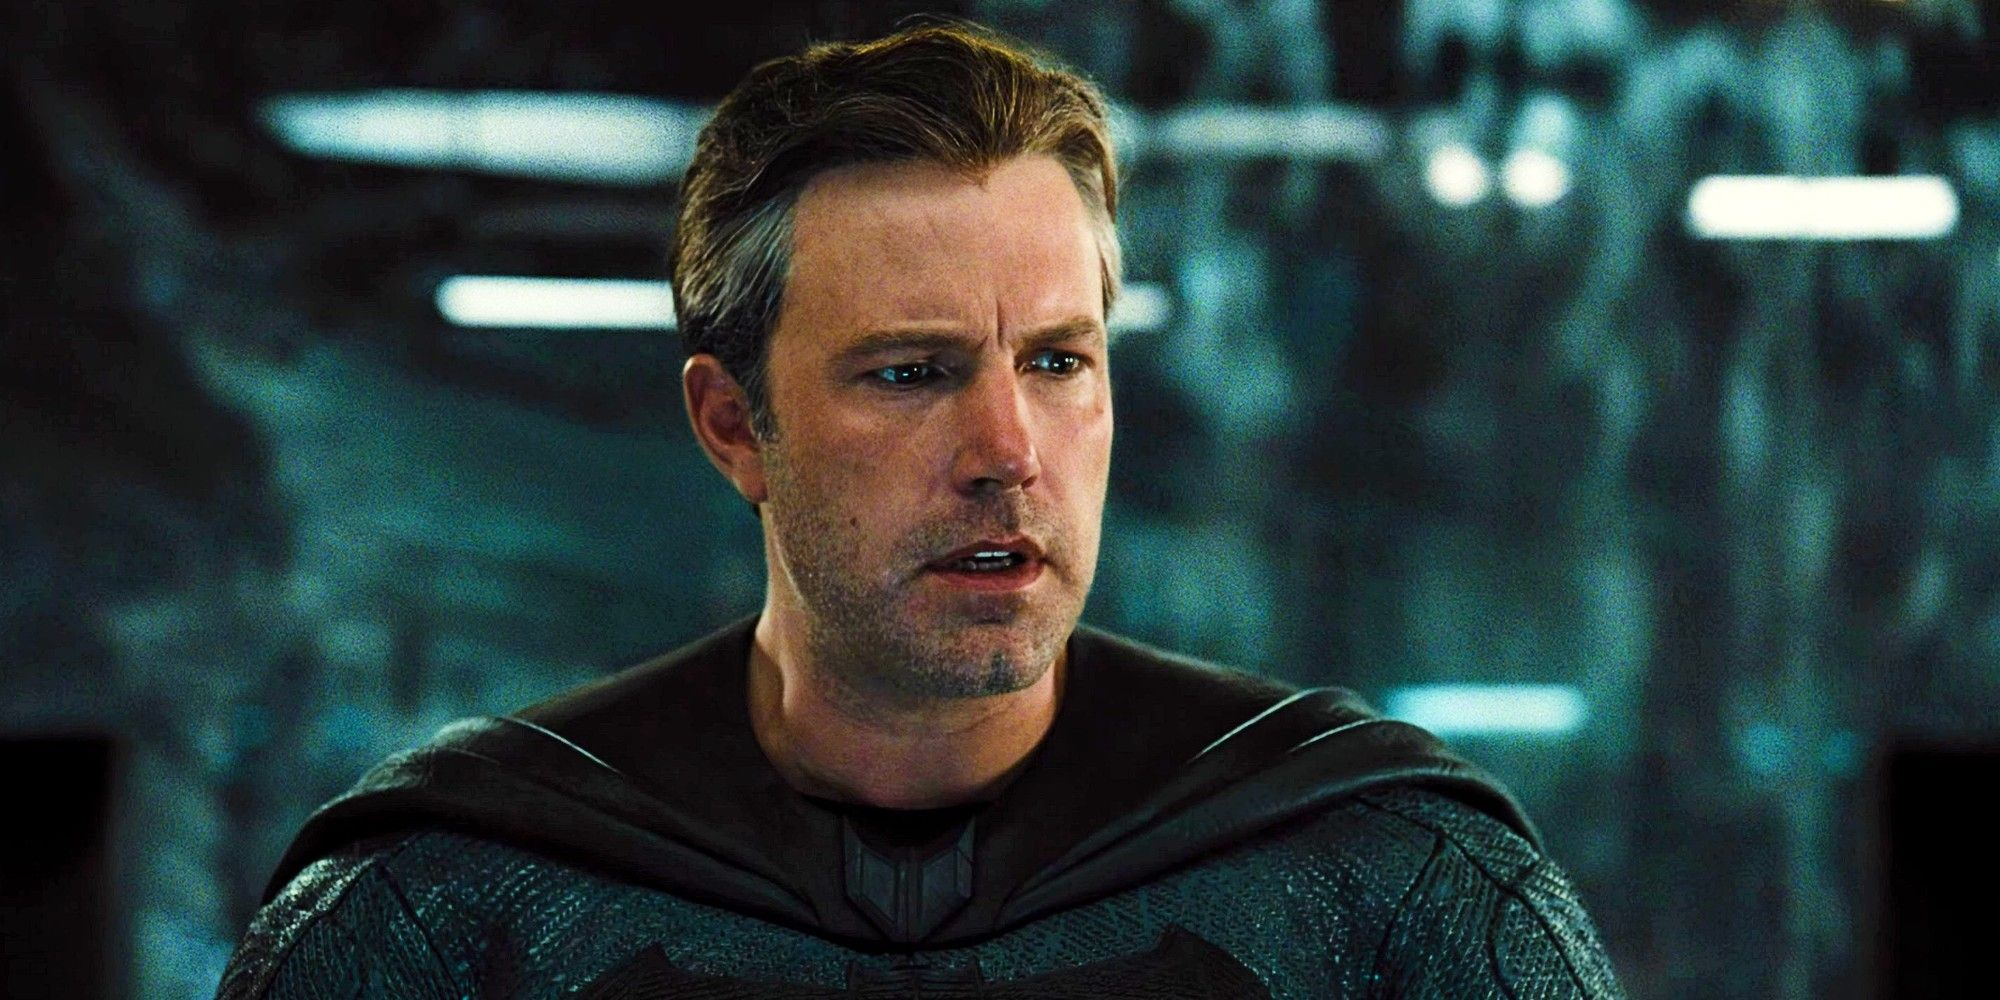 La película cancelada de Batman de Ben Affleck es llamada “F ** king Awesome” por Insider a medida que surgen nuevos detalles